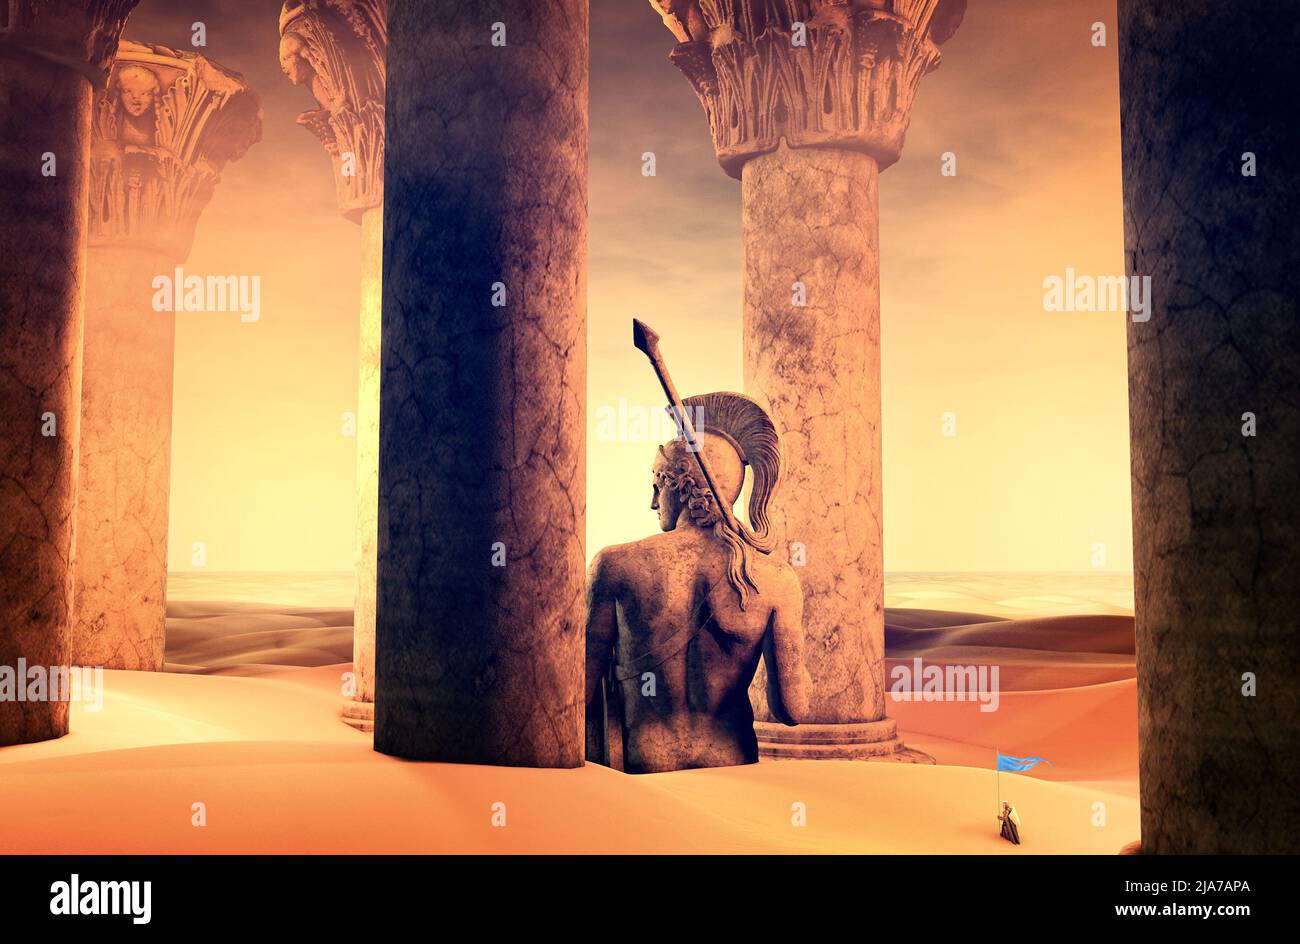 Paisaje de fantasía, guerrero medieval rodeado de ruinas de otros tiempos, mundos perdidos, estatua de un guerrero con lanza y columnas. Desierto y dunas de arena Foto de stock